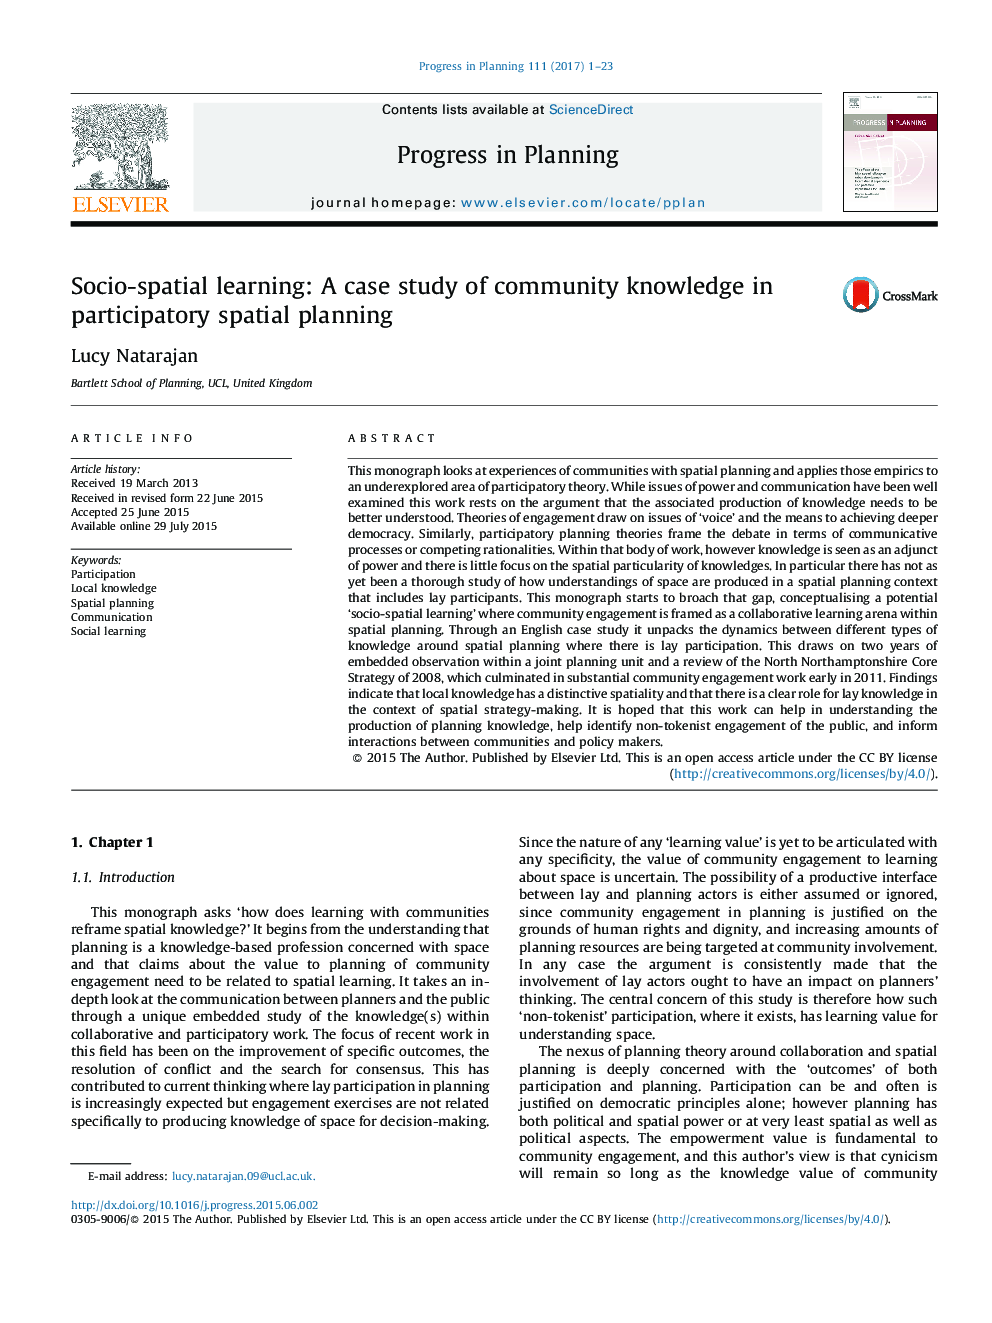 یادگیری اجتماعی و فضایی: مطالعه موردی دانش جامعه در برنامهریزی فضایی مشارکتی 